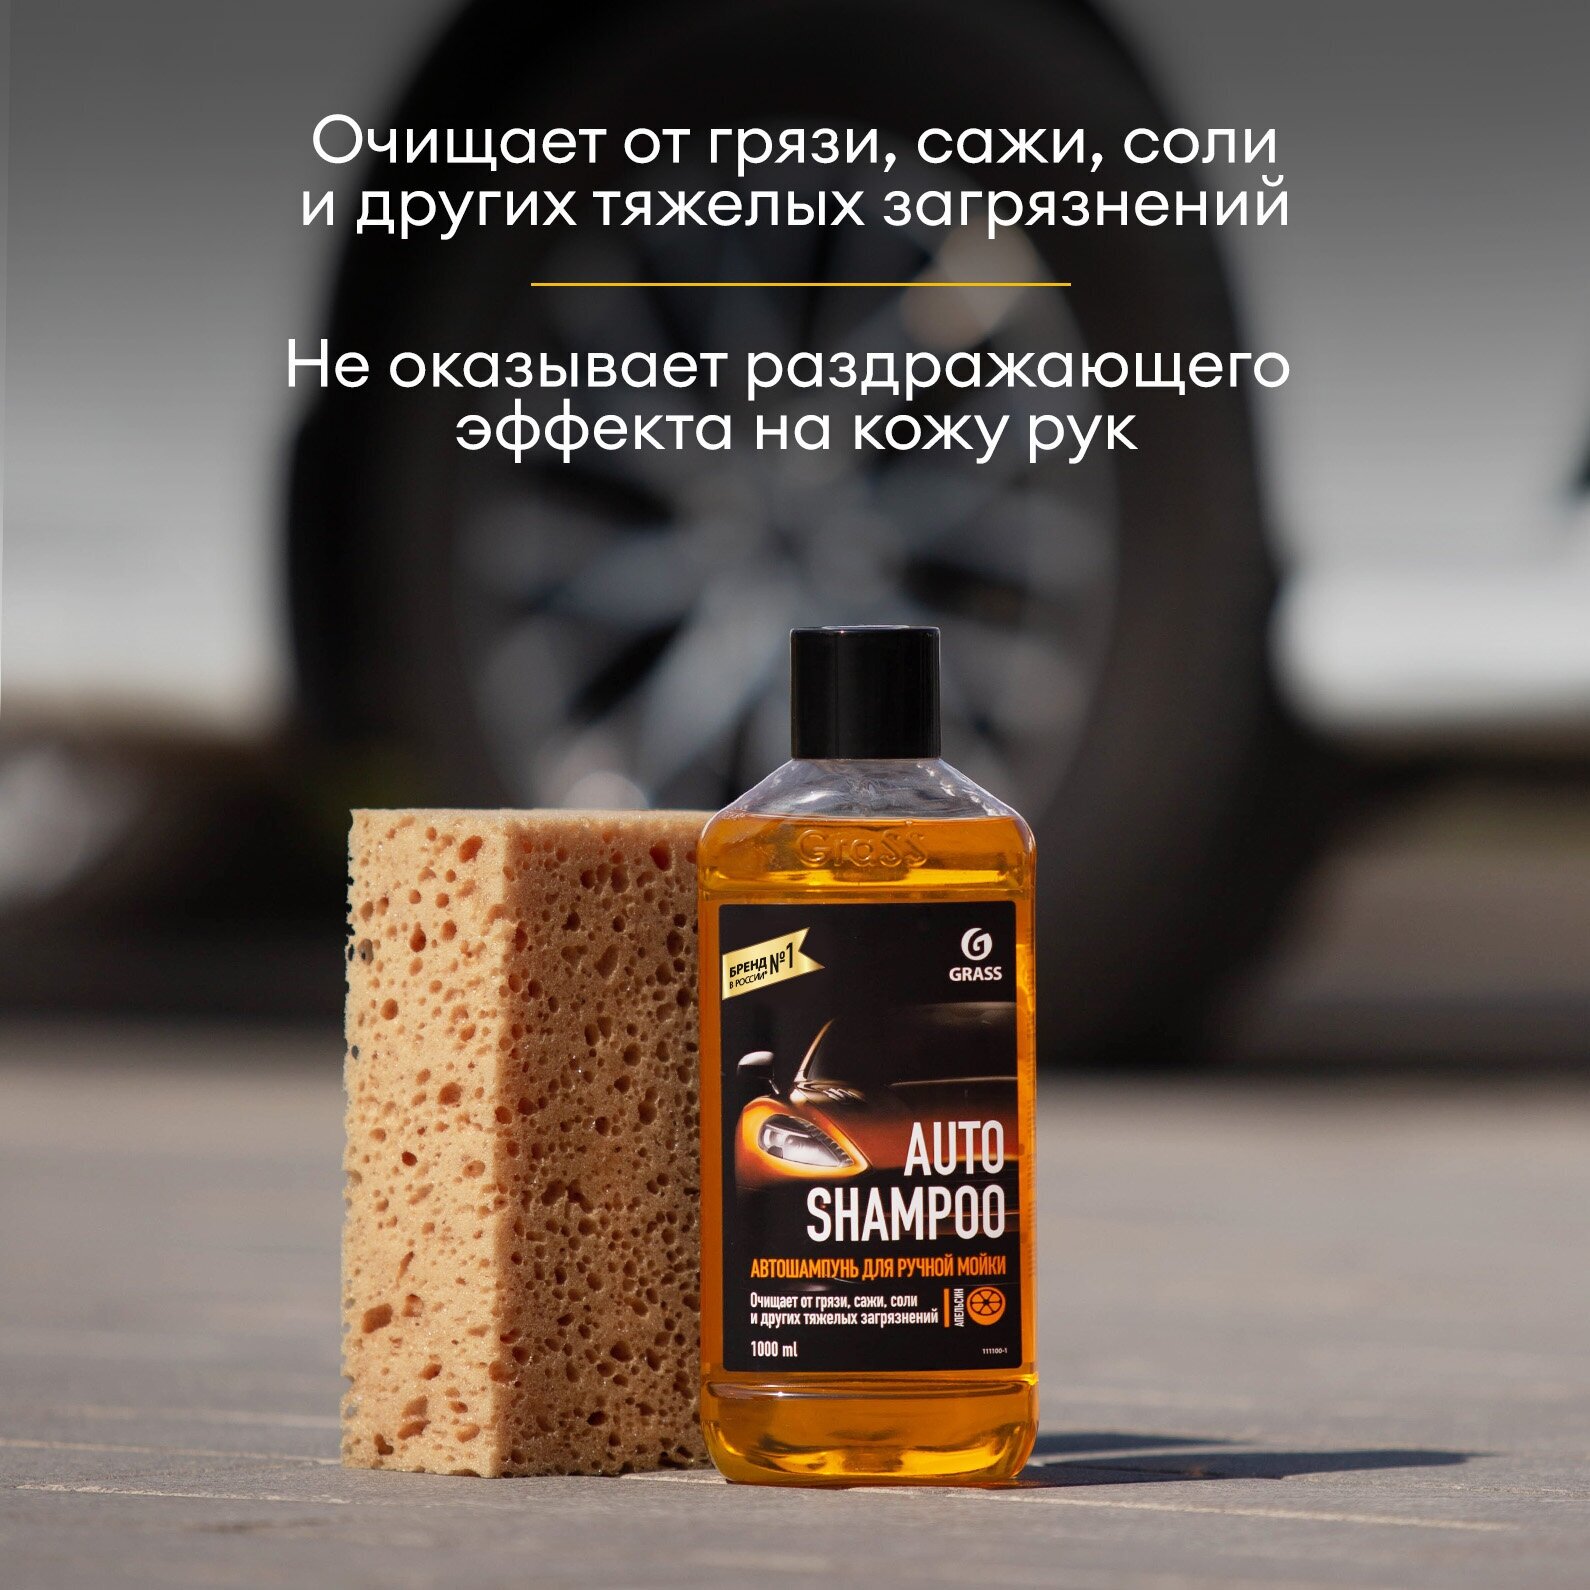 Автошампунь Grass "Auto Shampoo" с ароматом апельсина для ручной мойки,1 л